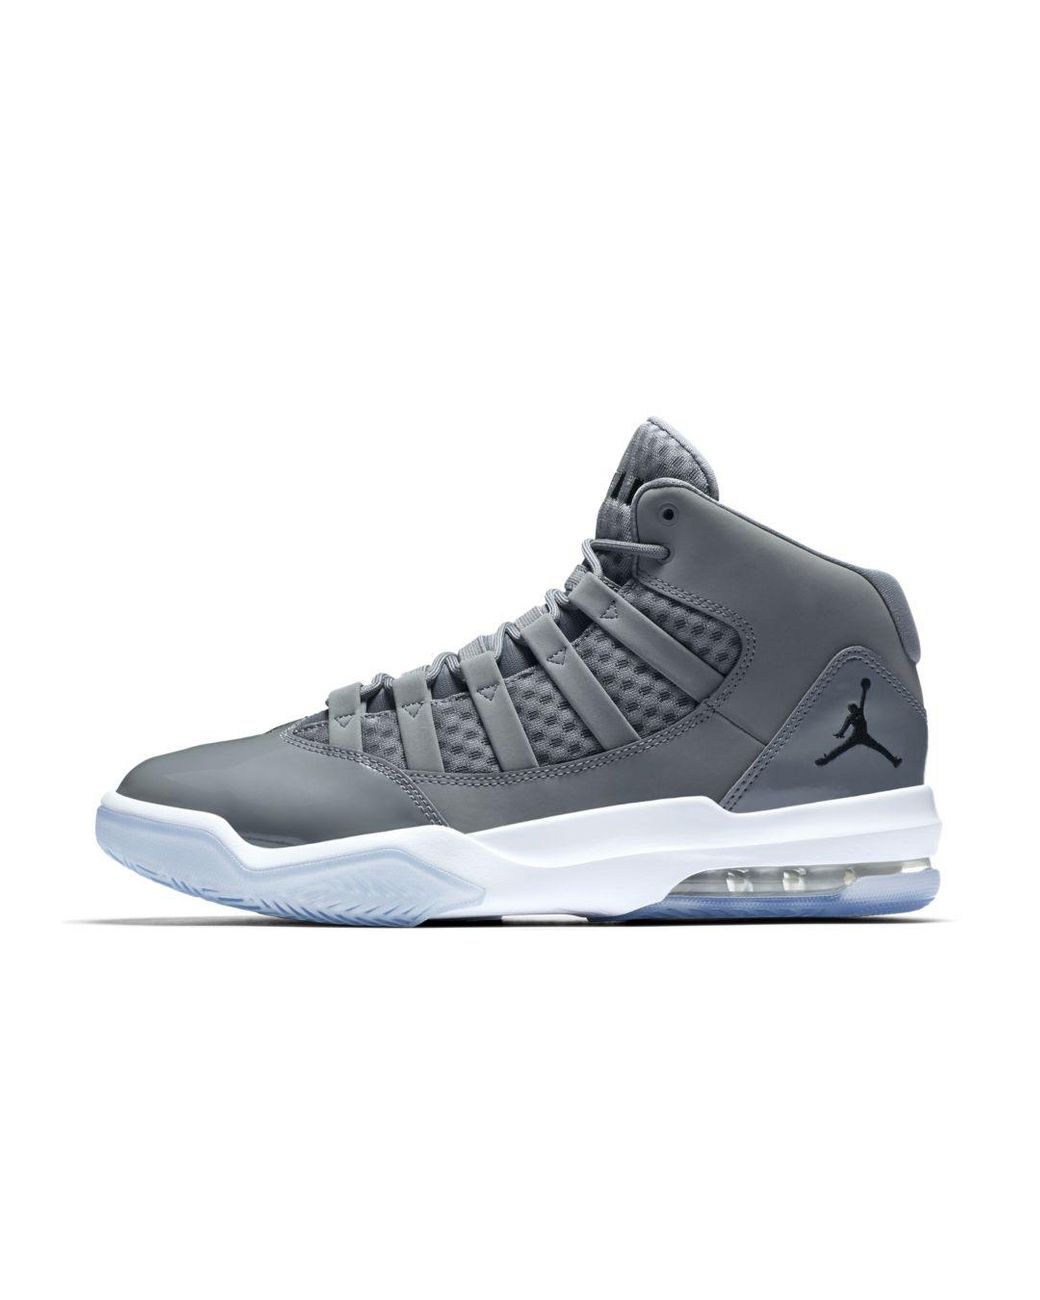 Nike Jordan Max Aura Basketball Shoe in 